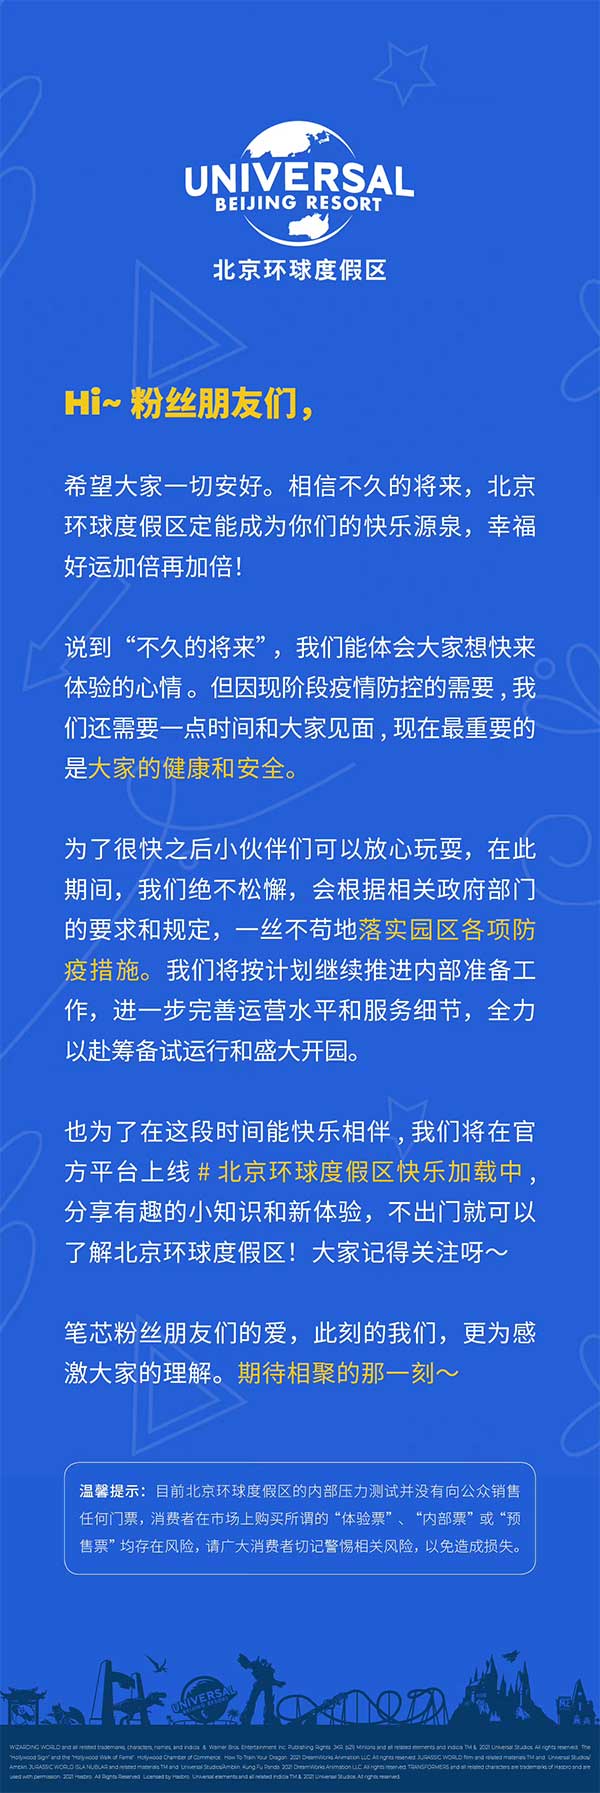 北京环球度假区今日重启内部压力测试……开园日期渐近？